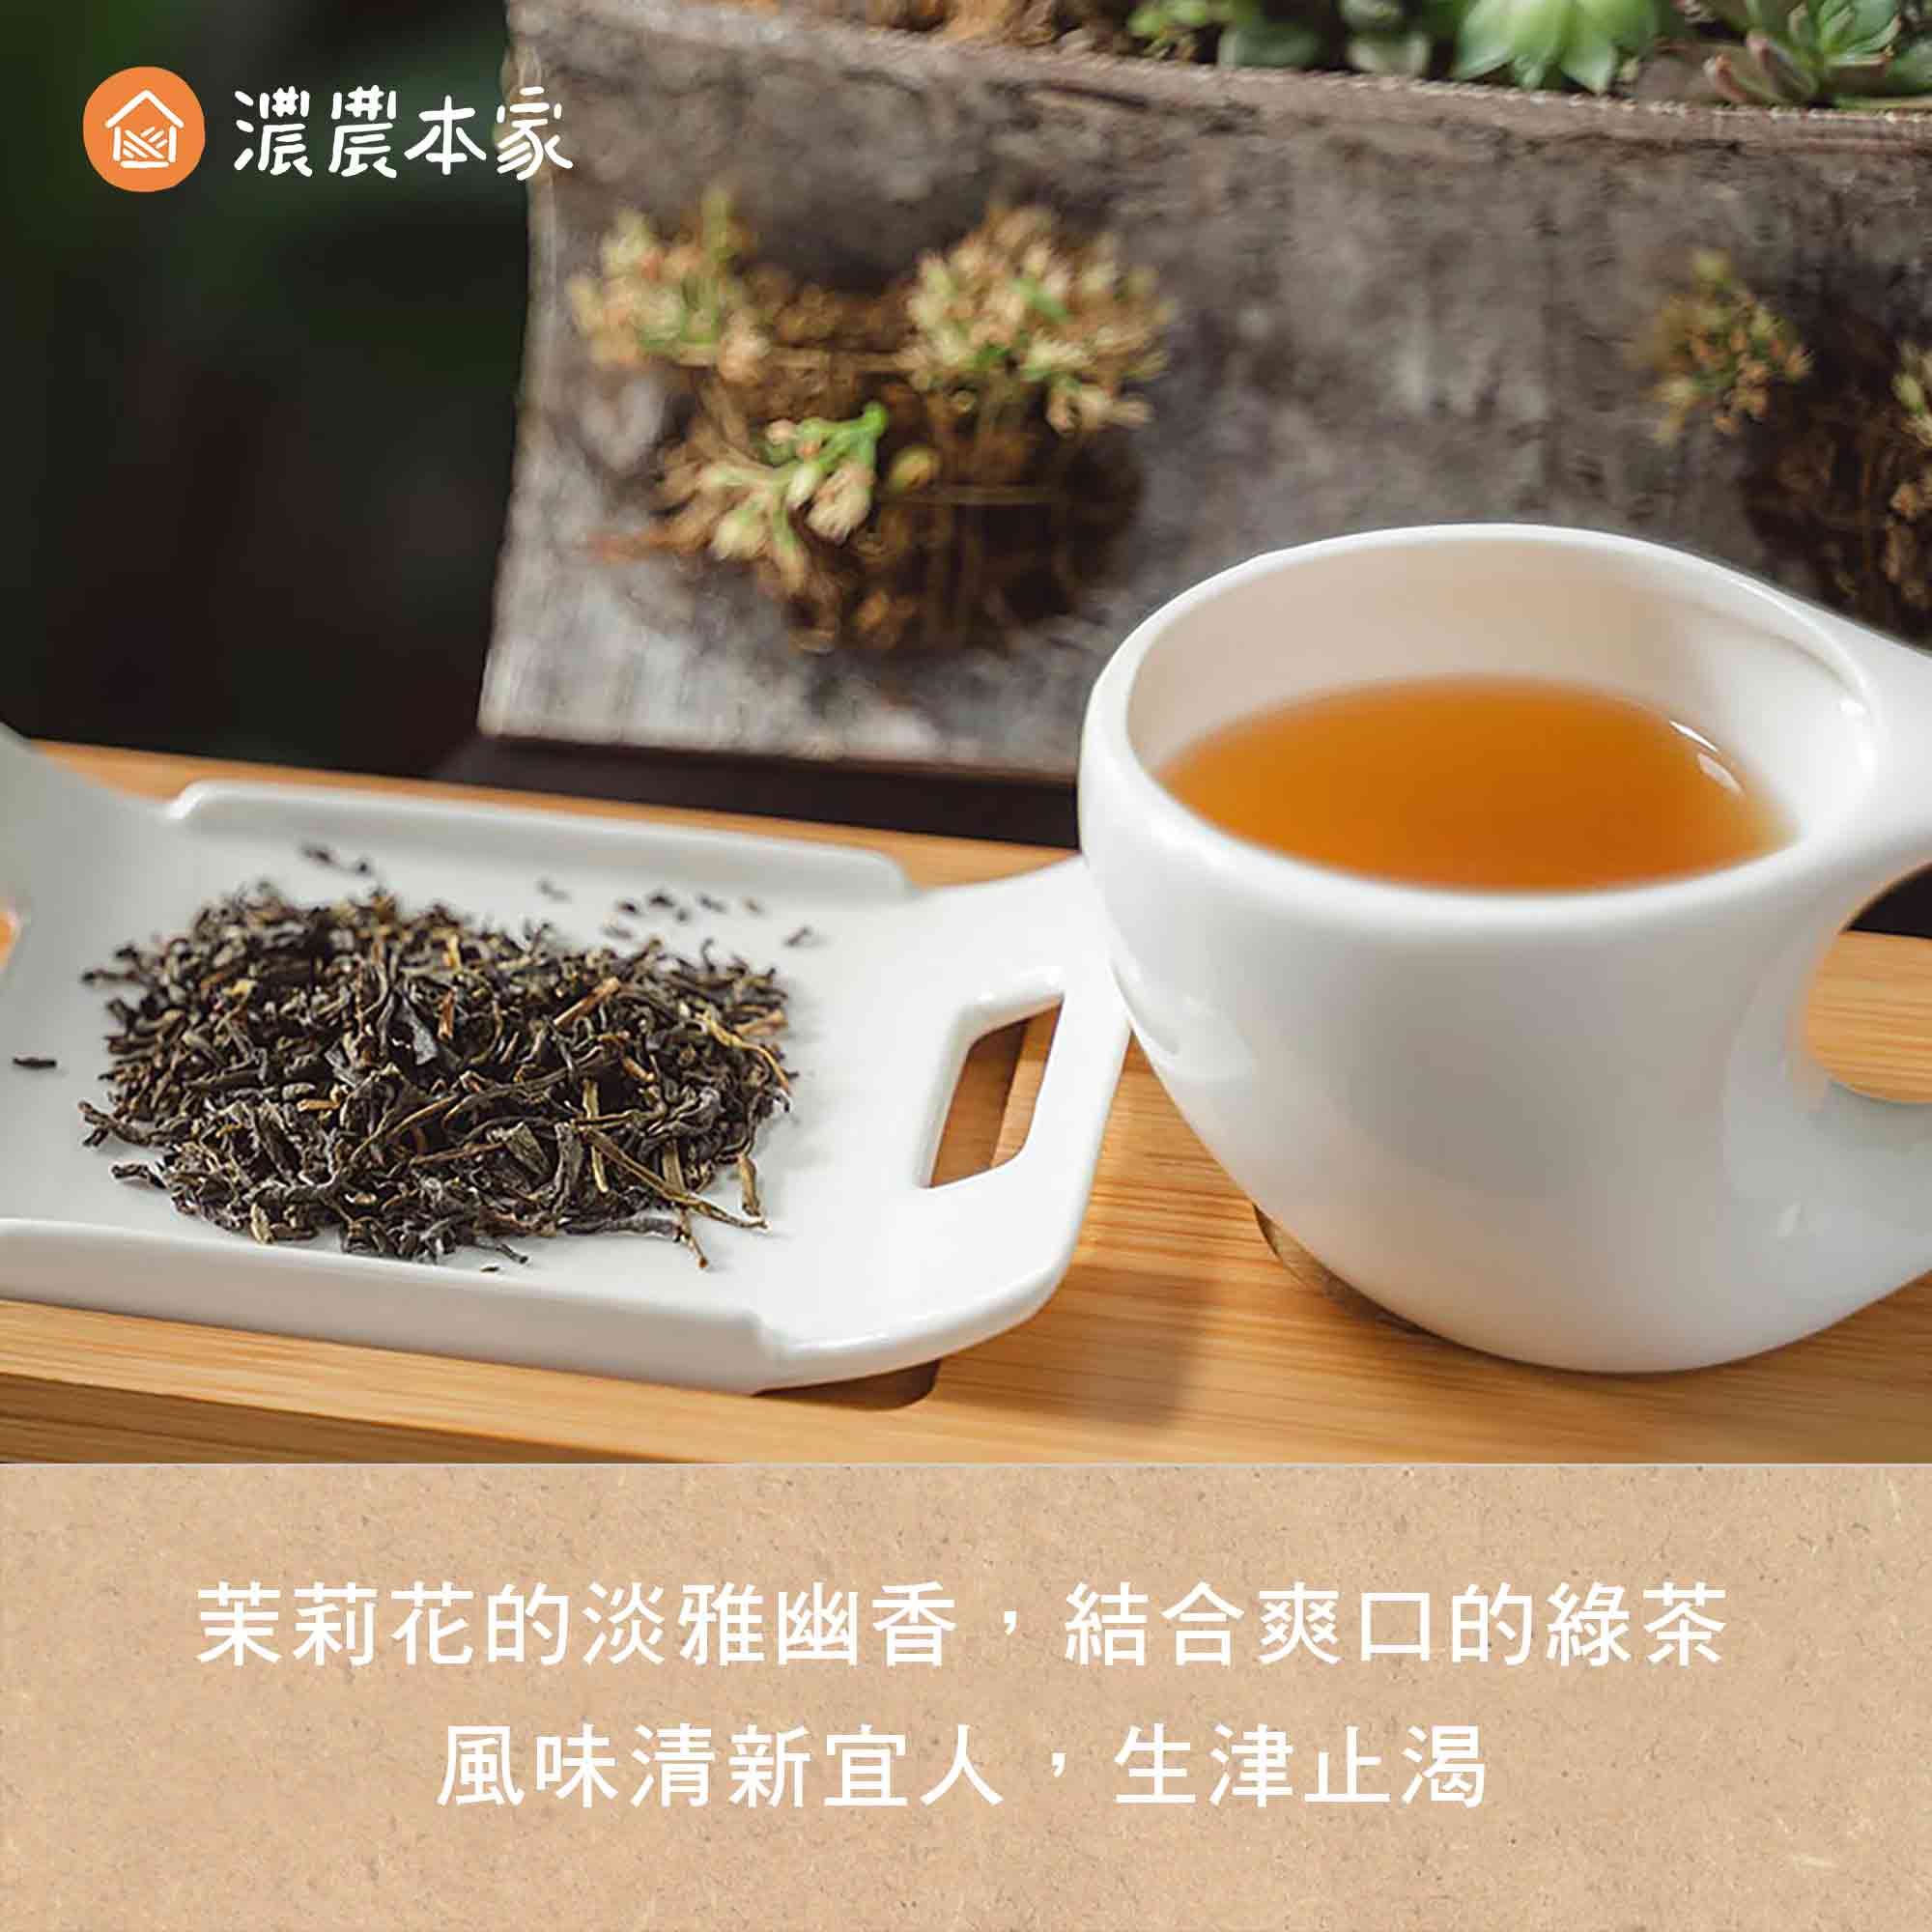 辦公室團購小零食推薦人氣台灣茉莉綠茶